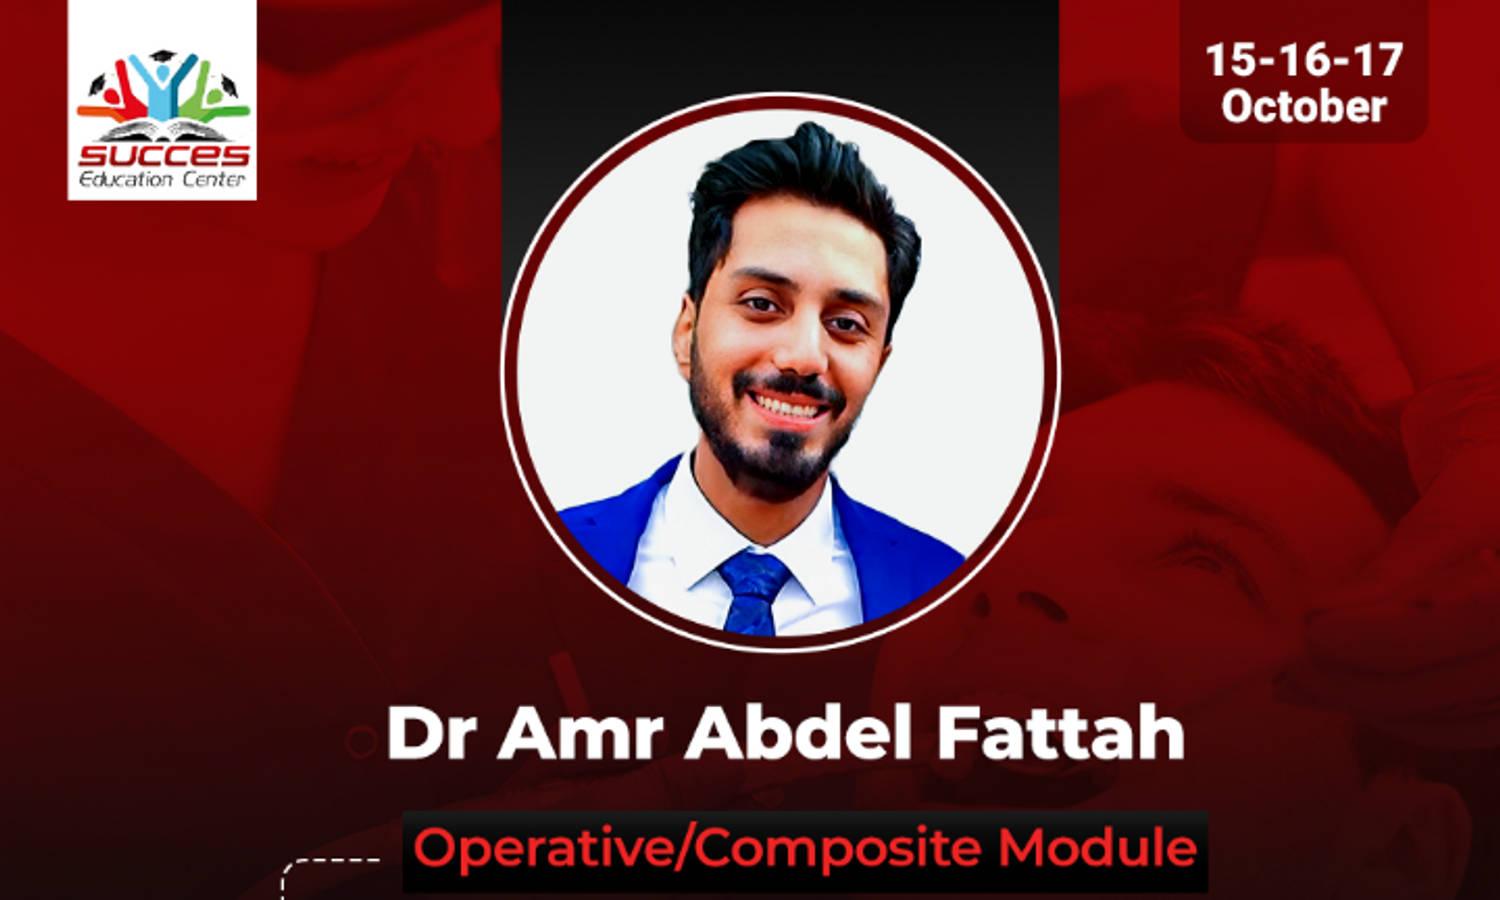 Success Operative/ Composite Module